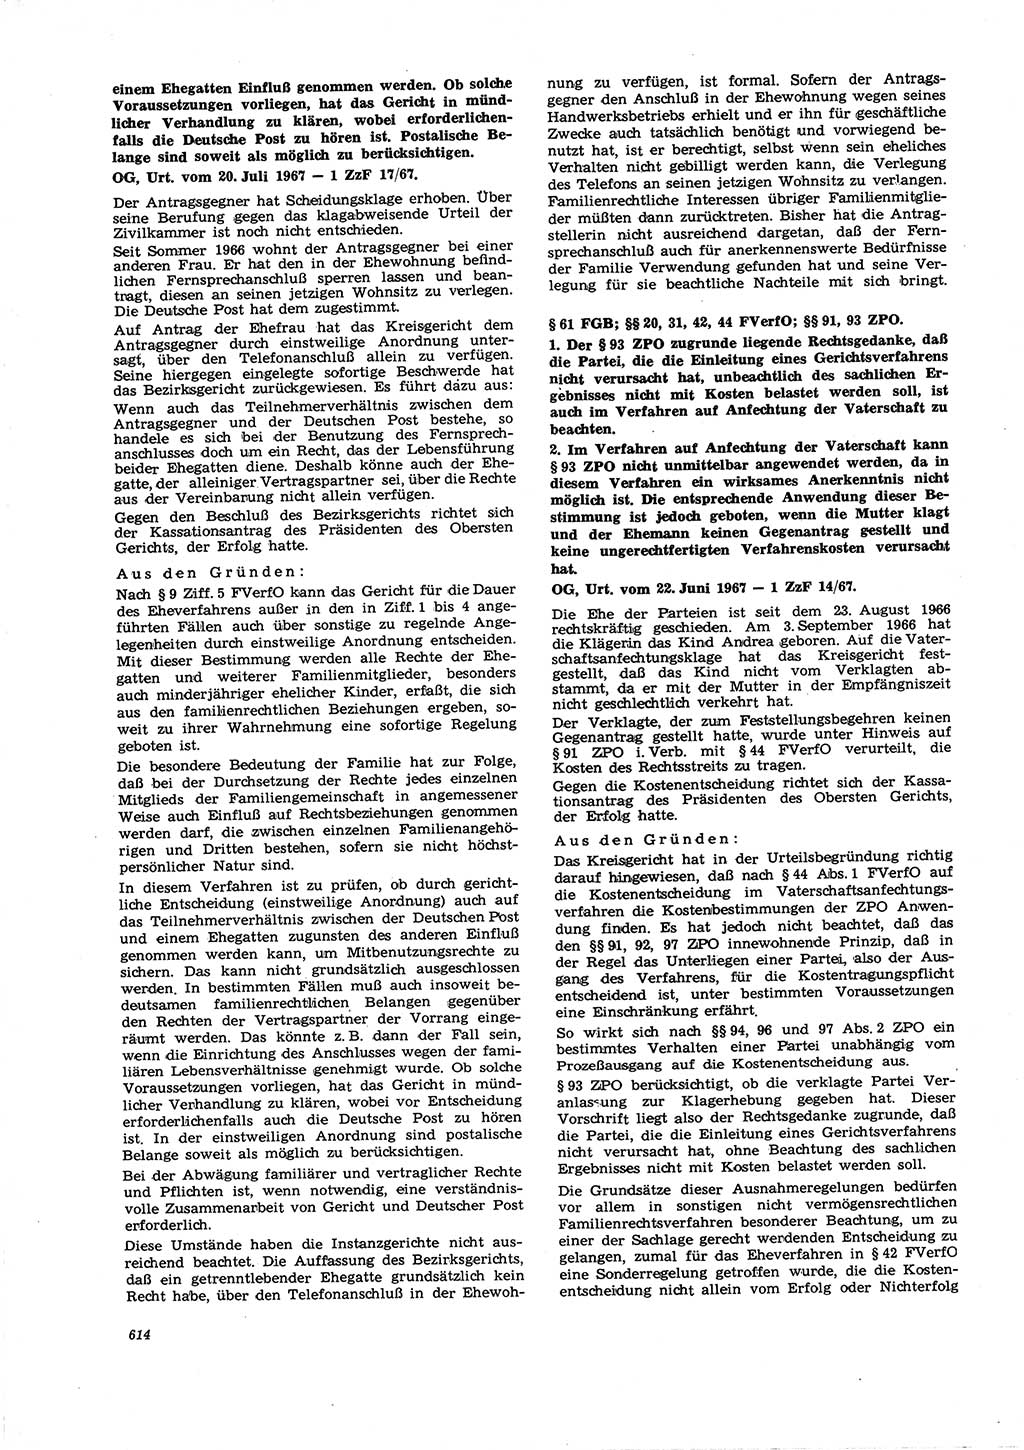 Neue Justiz (NJ), Zeitschrift für Recht und Rechtswissenschaft [Deutsche Demokratische Republik (DDR)], 21. Jahrgang 1967, Seite 614 (NJ DDR 1967, S. 614)